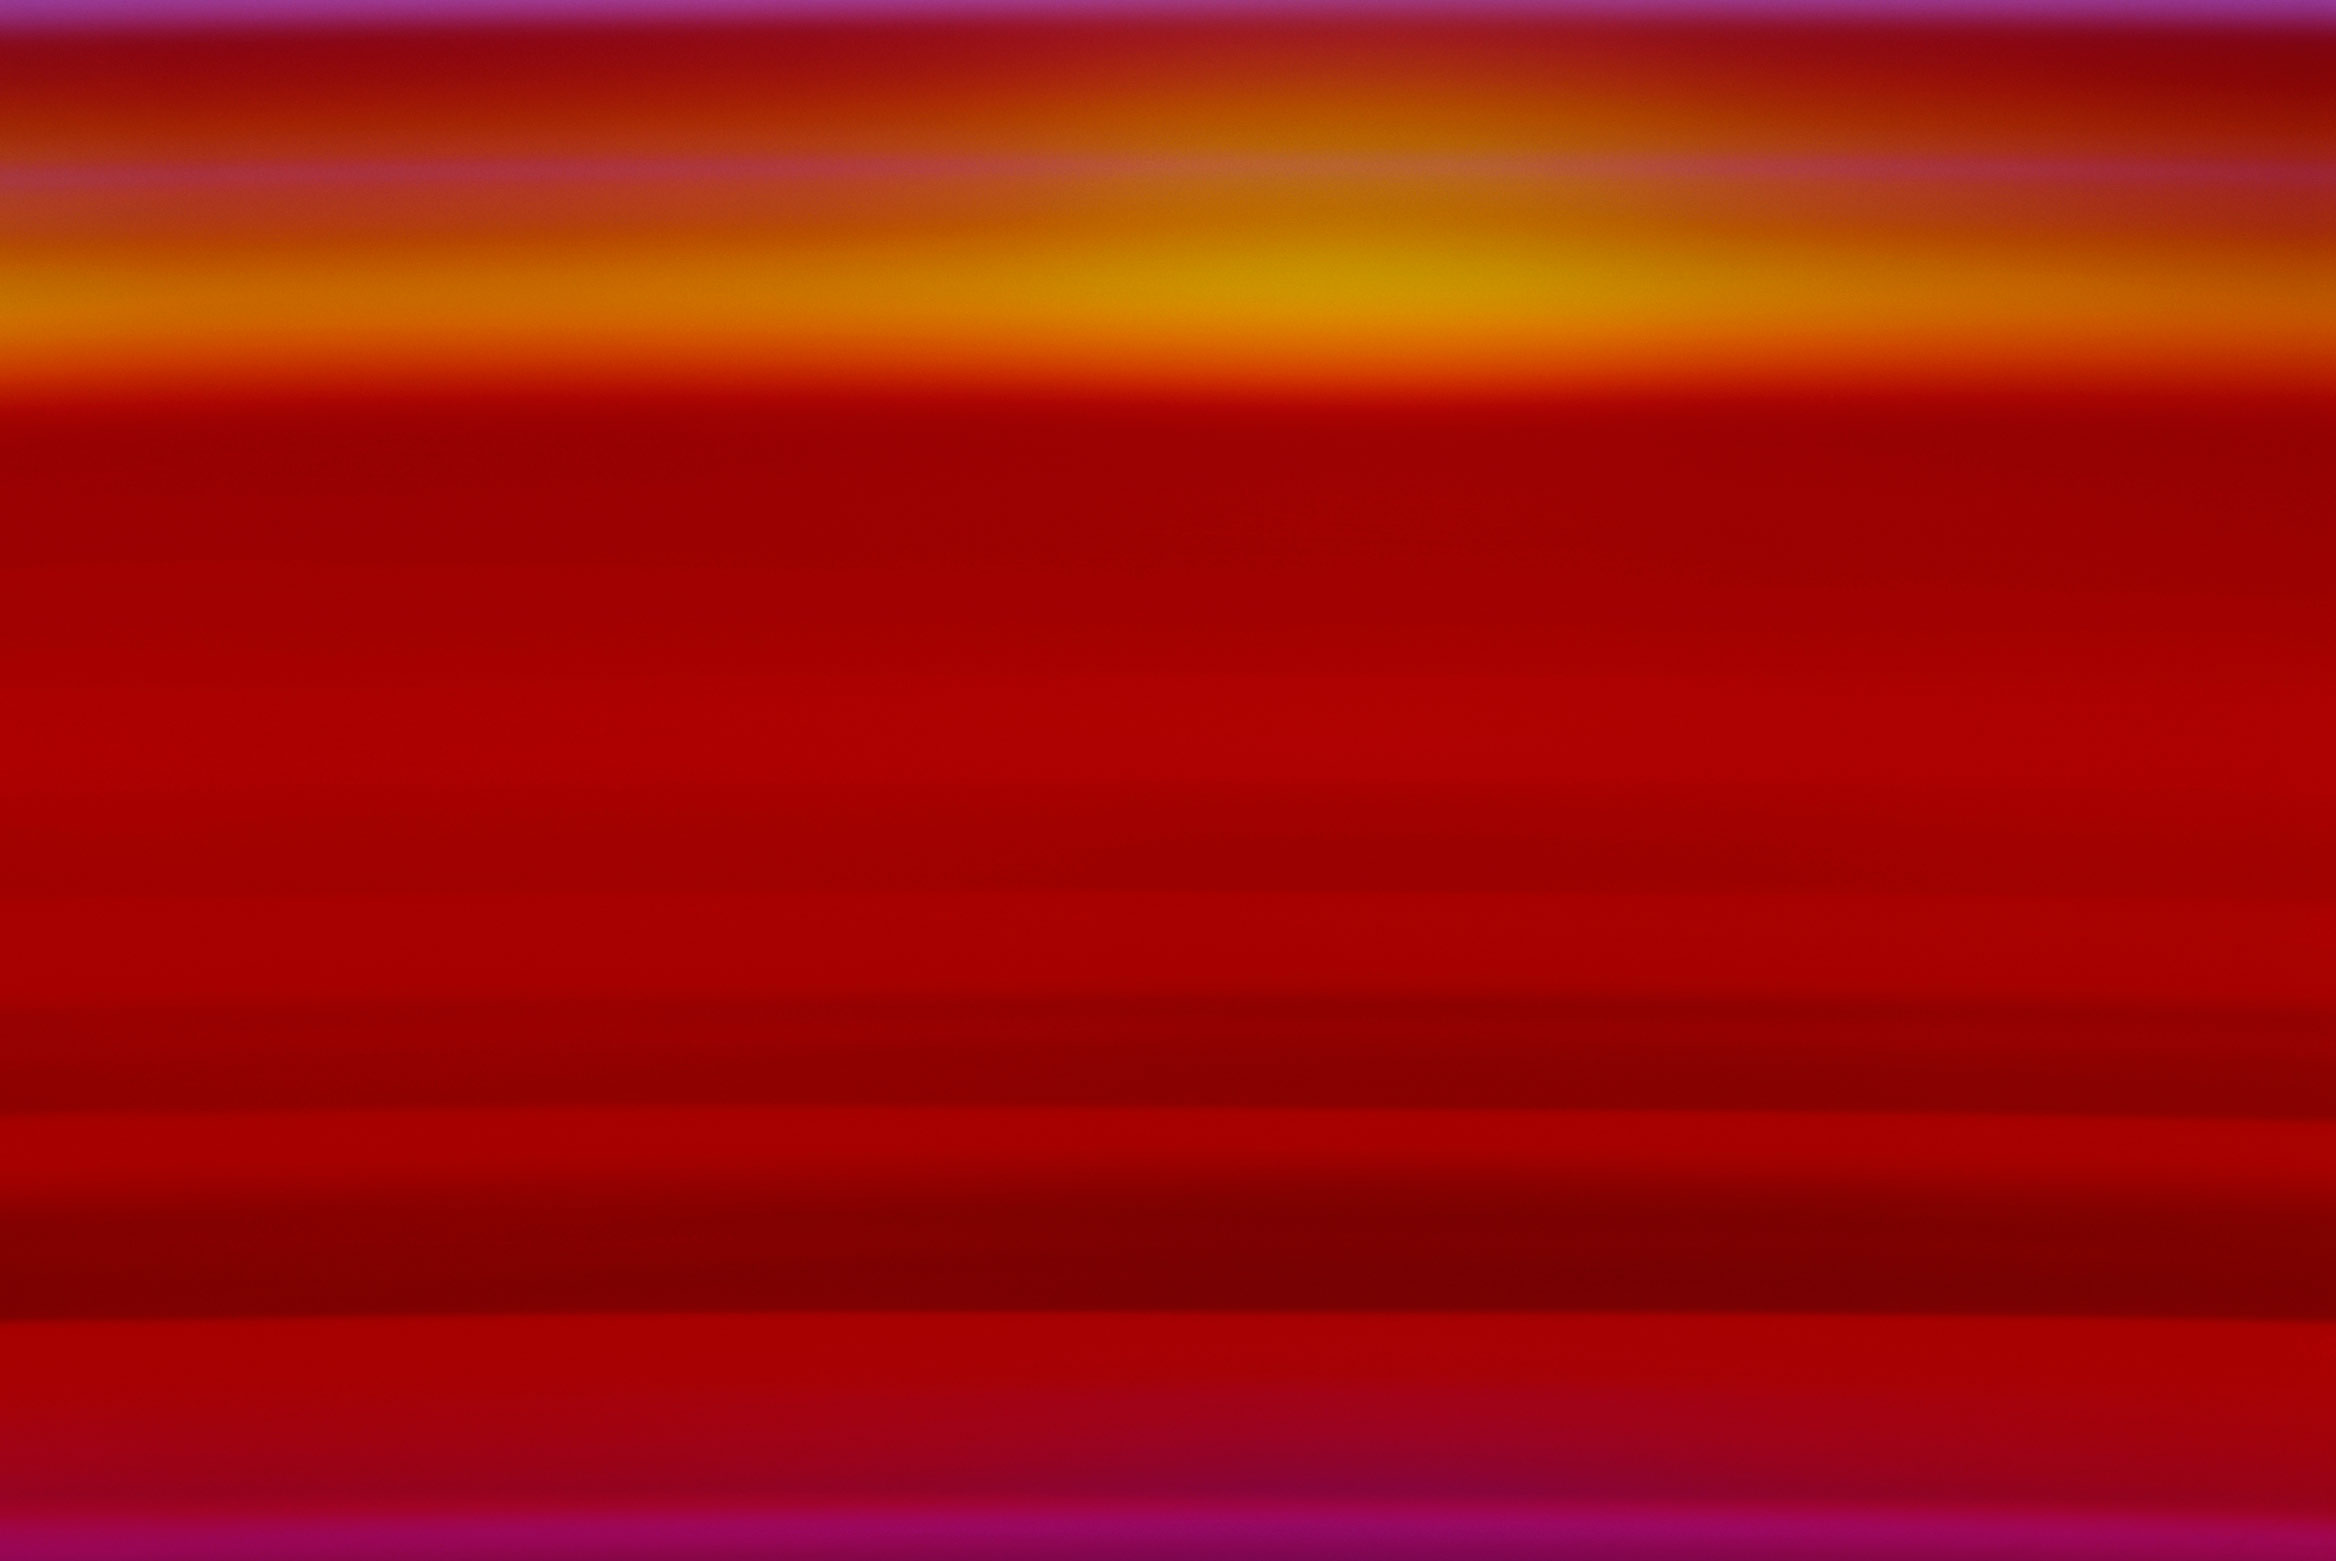 Emission Spectrum of Hydrogen #2, 2011